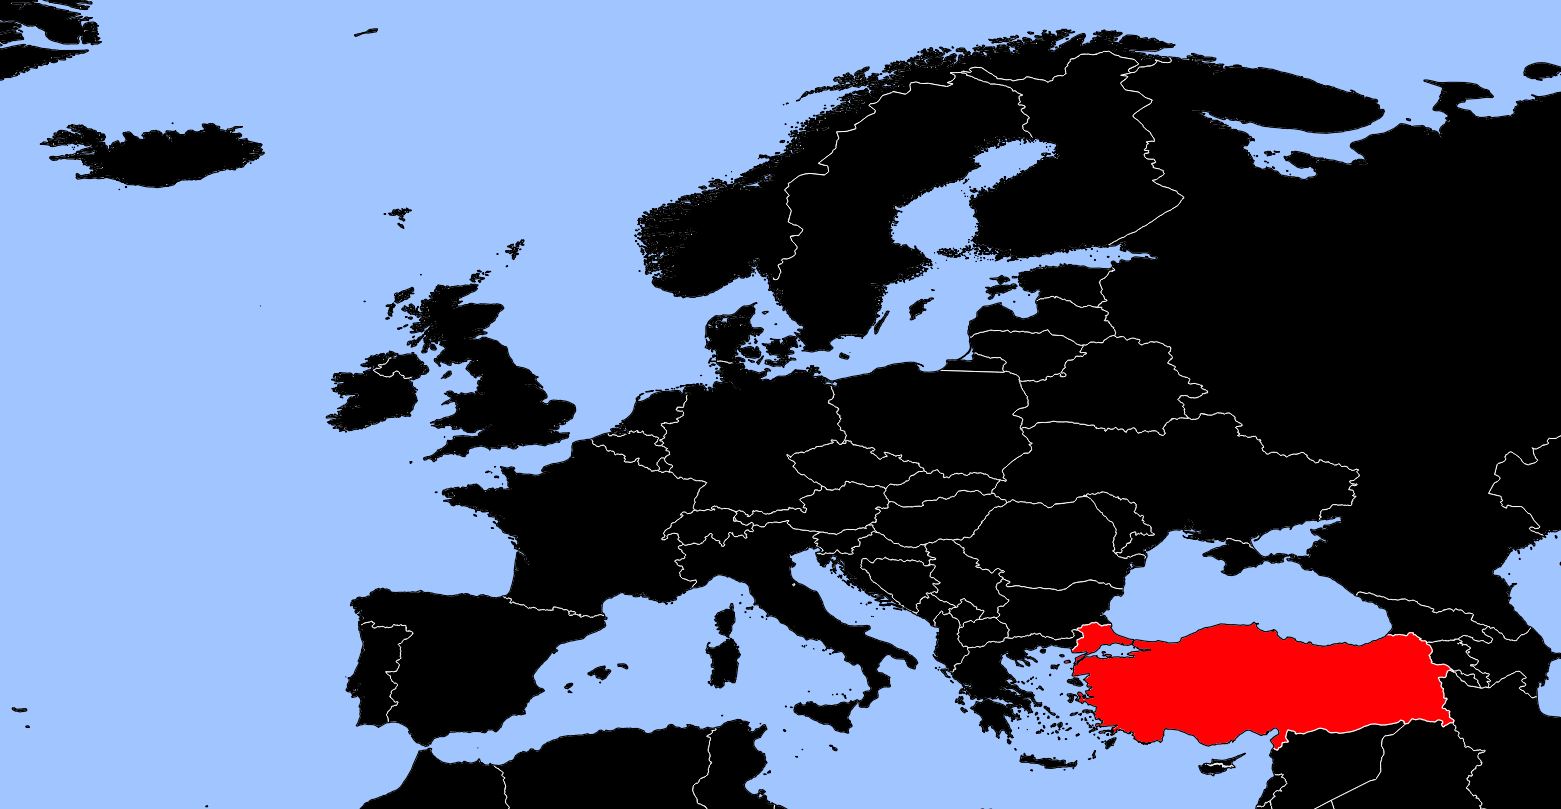 carte de la turquie europe